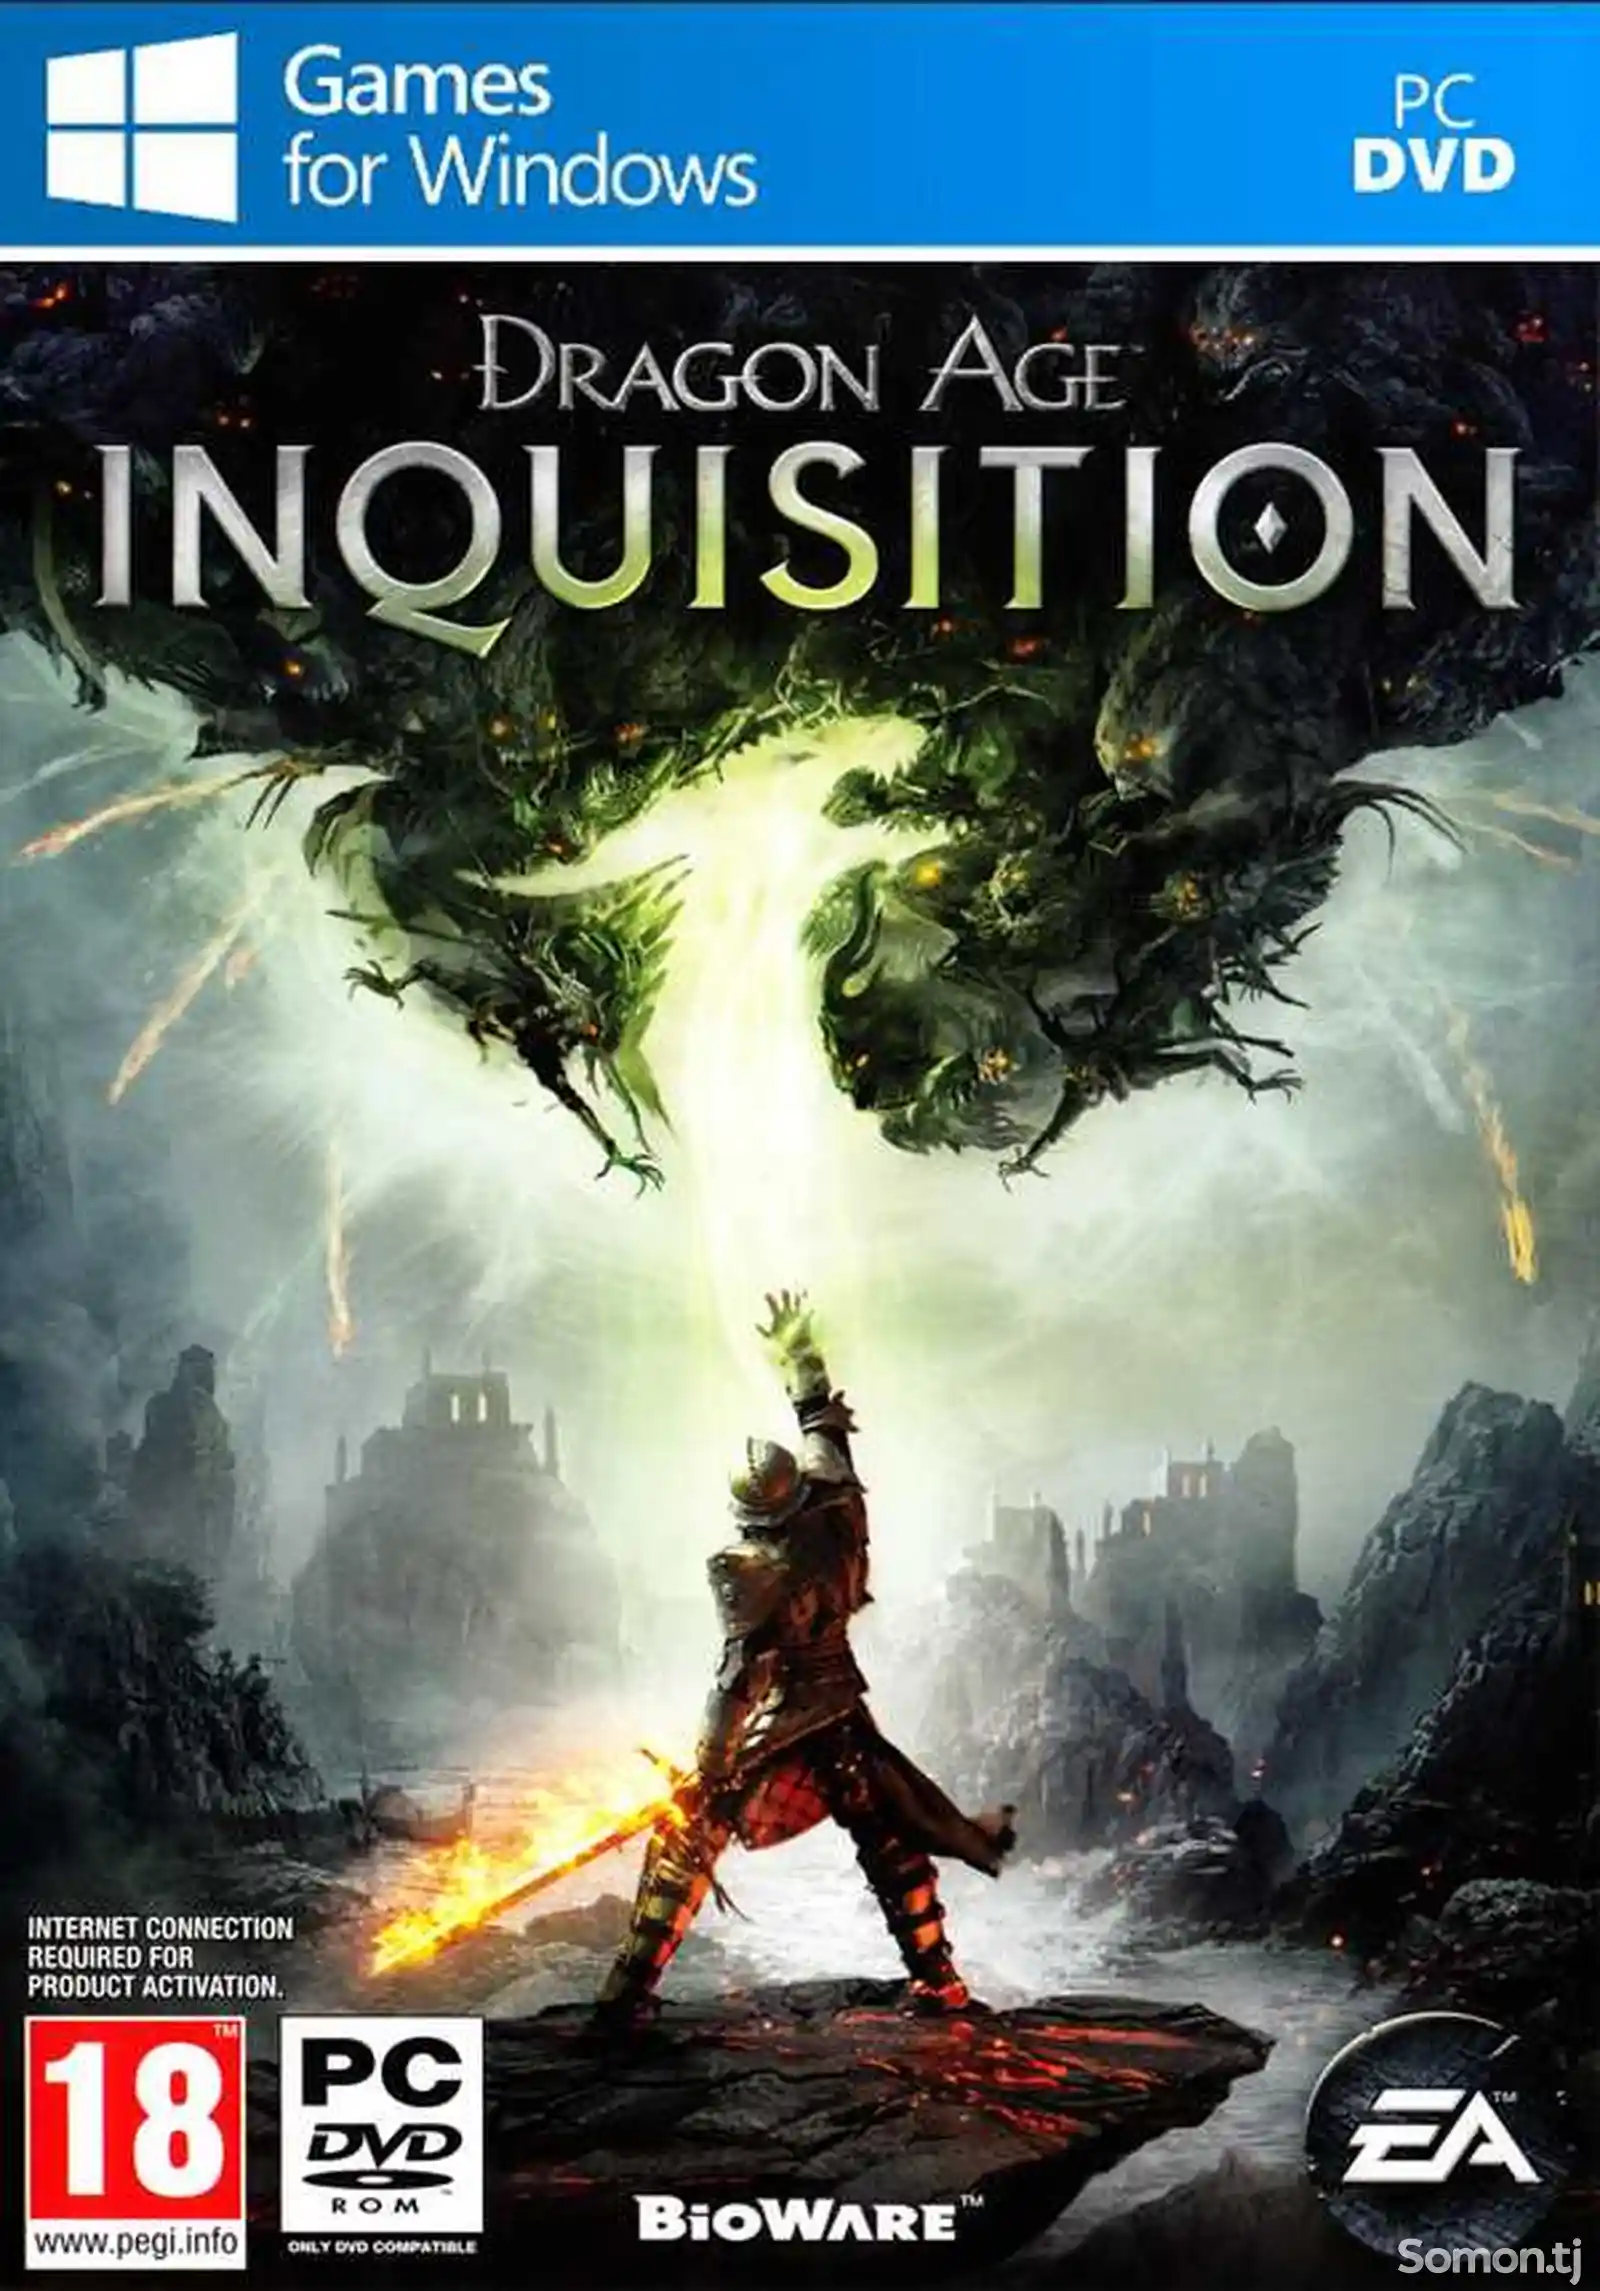 Игра Dragon age inquisition для компьютера-пк-pc-1